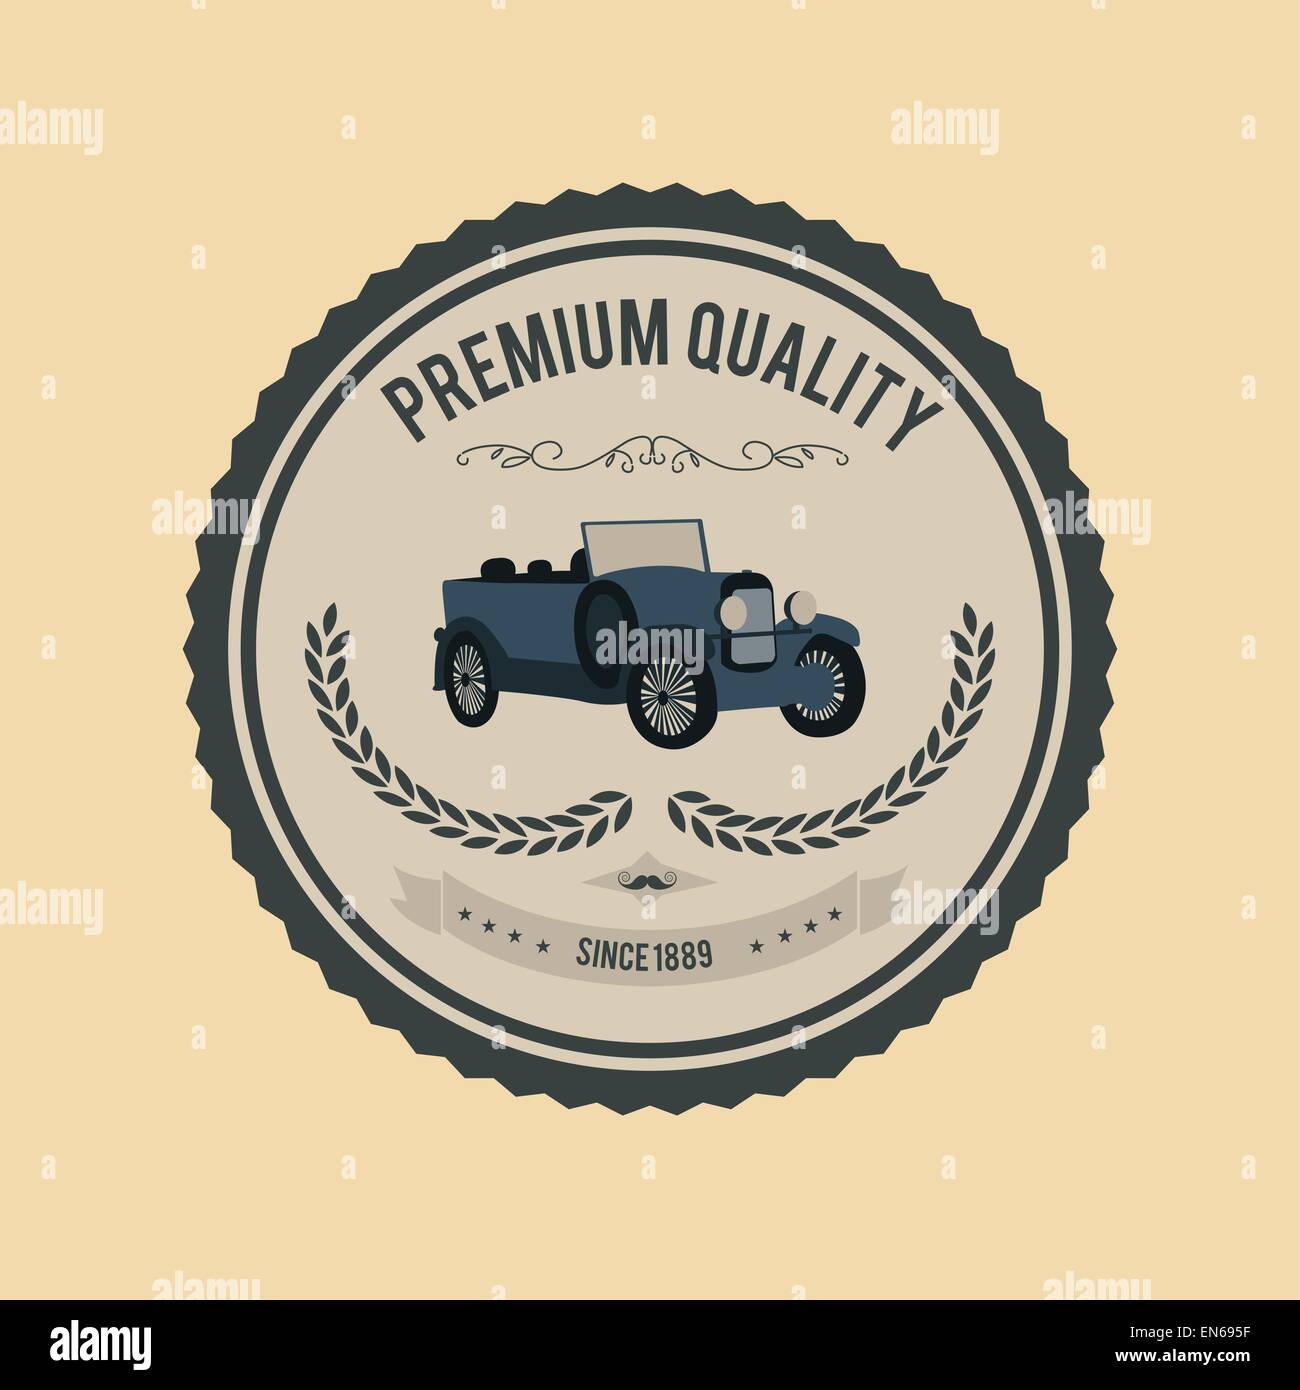 Premium-Qualität Abzeichen Vektor mit Auto Stock Vektor